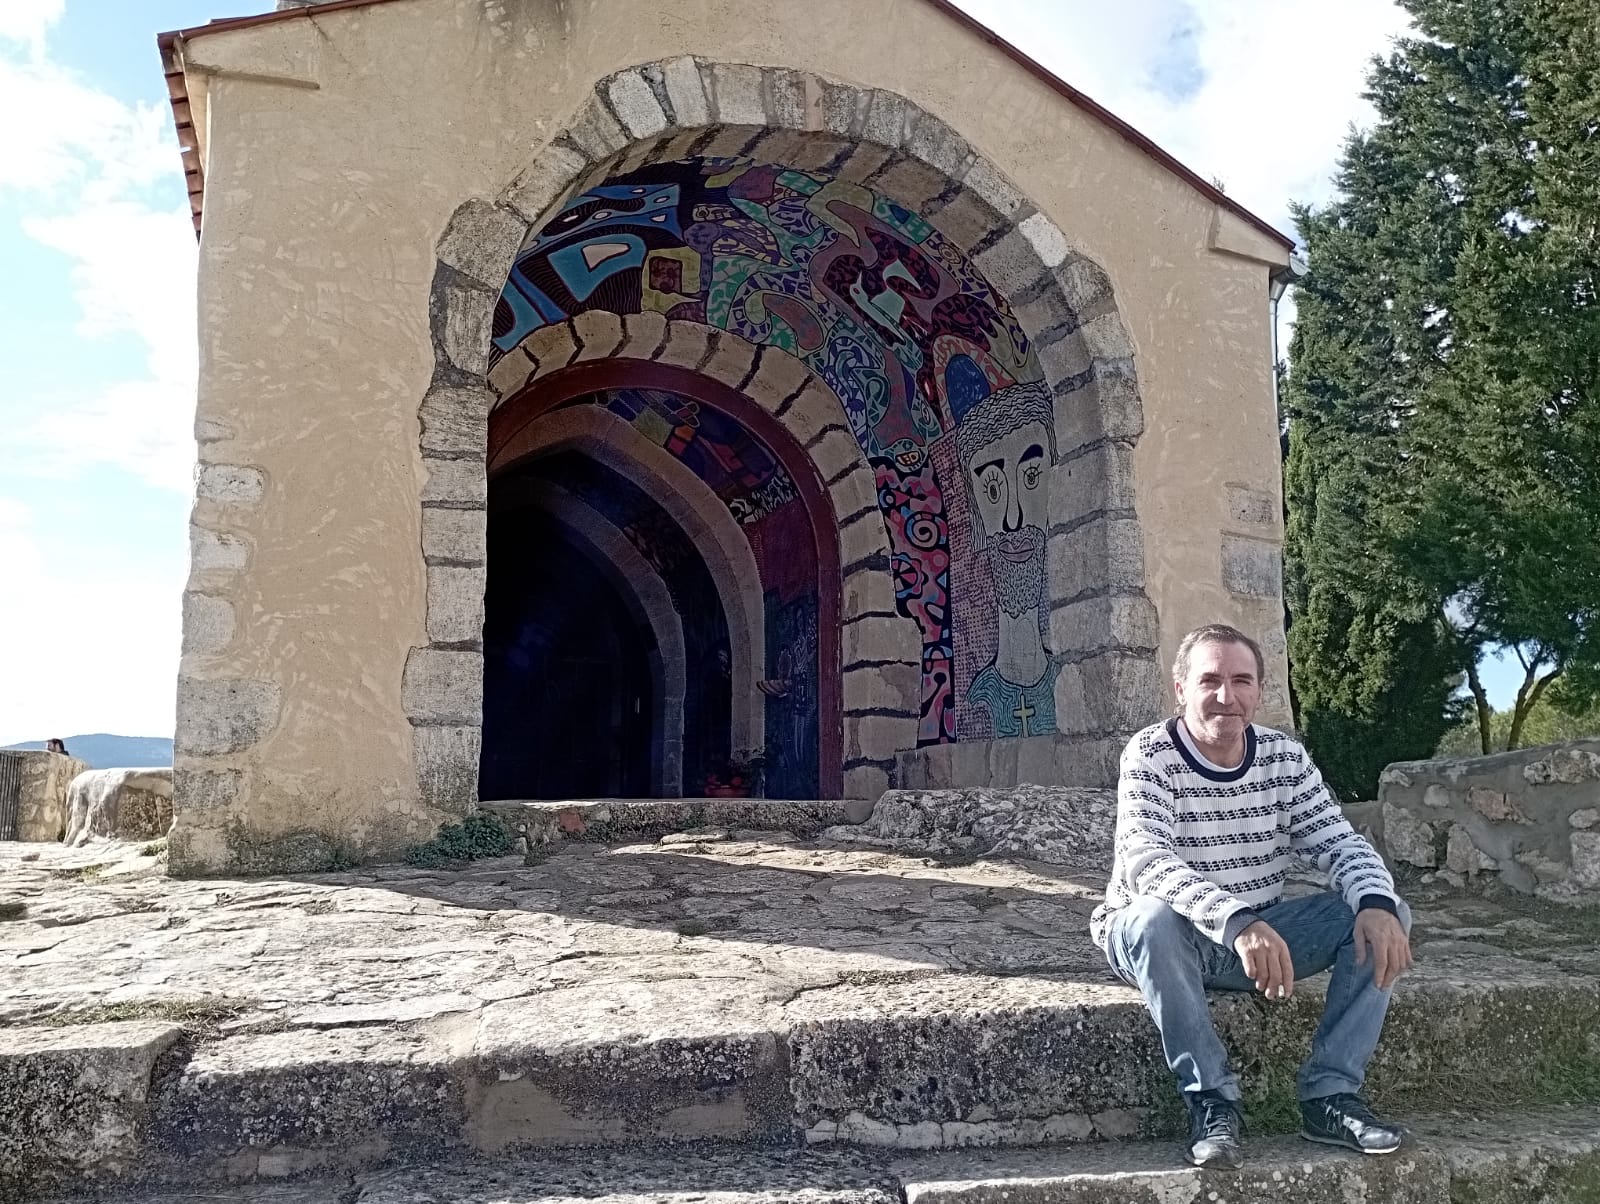 Cees a las puertas de la ermita, ubicada en plena Serra de Mariola